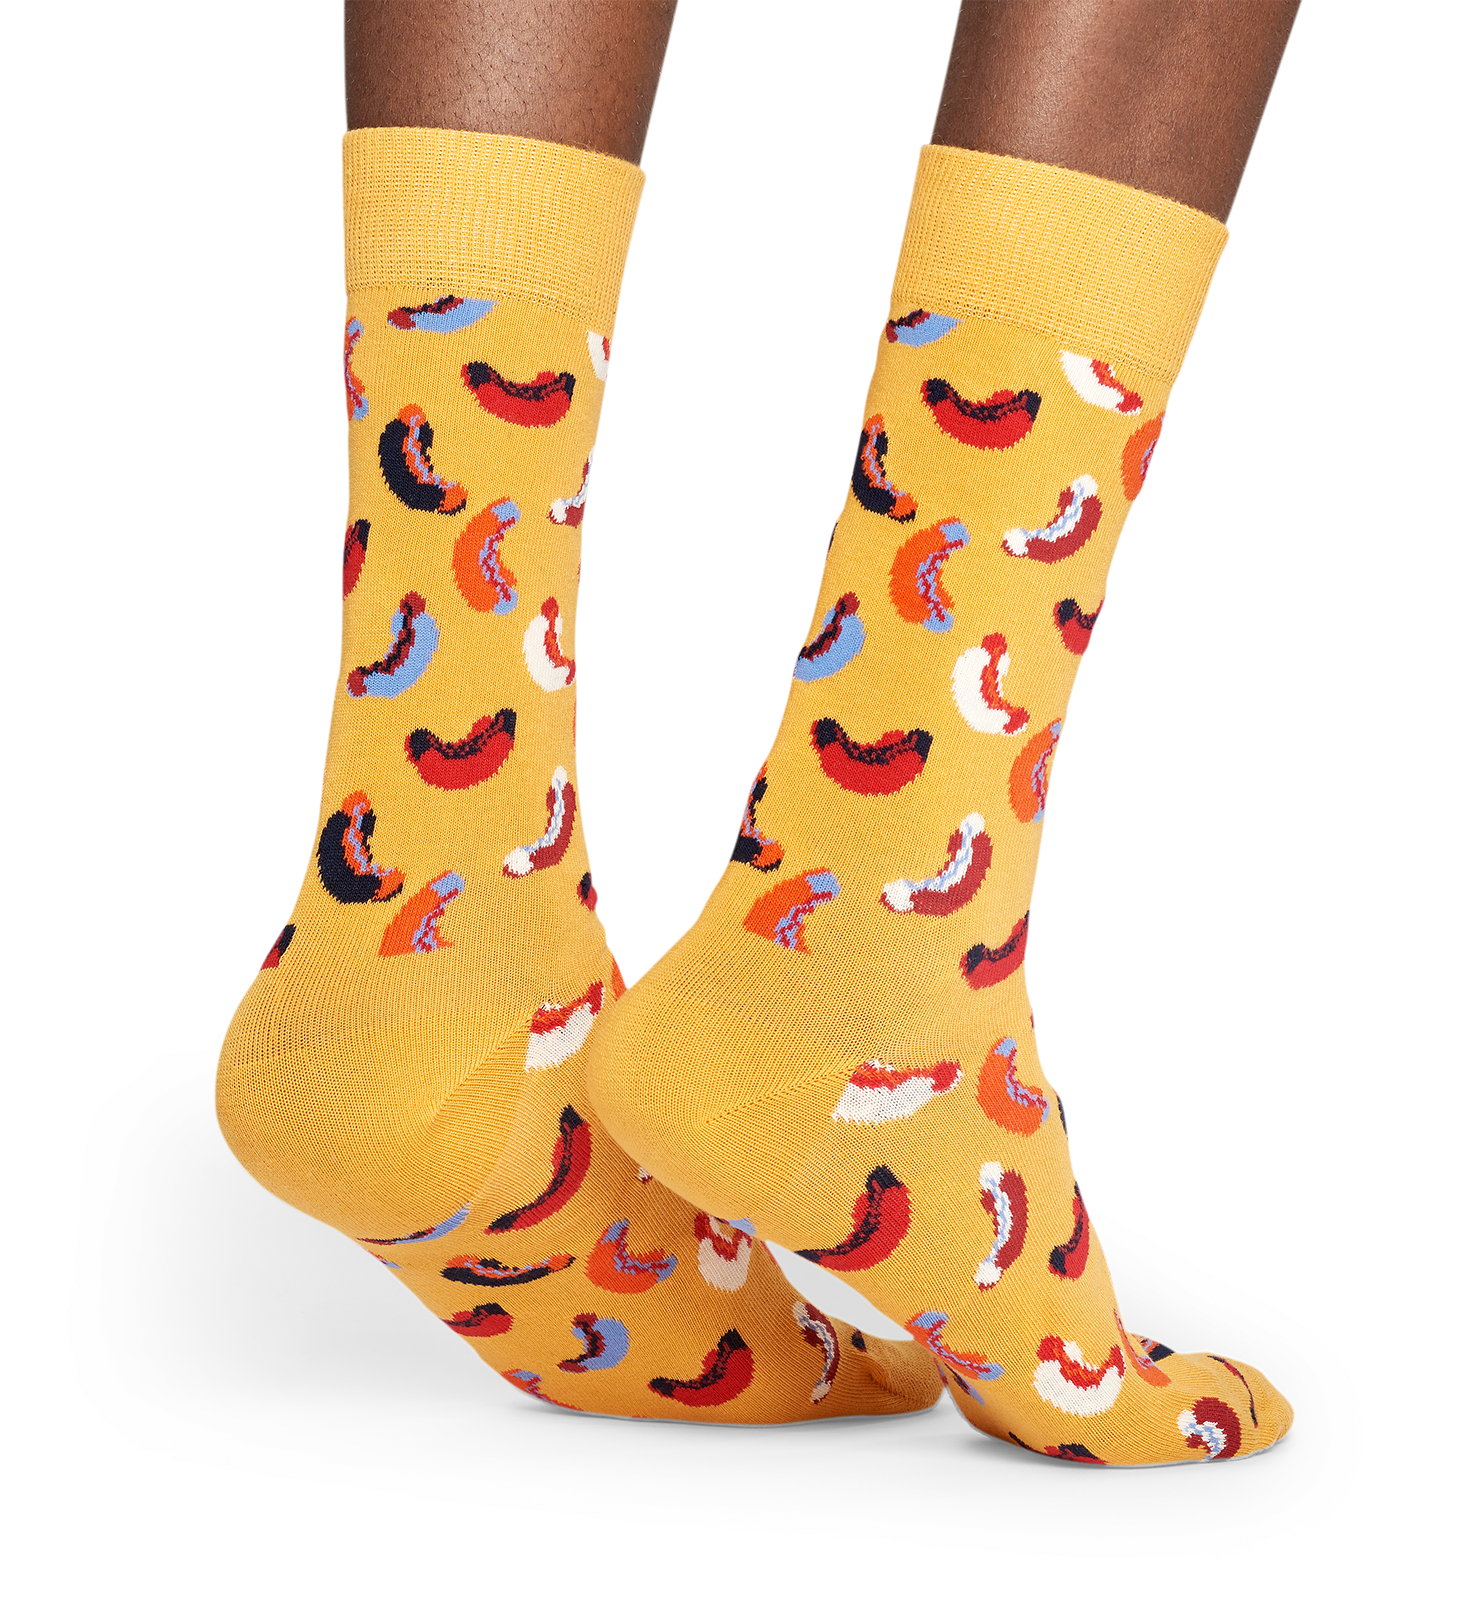 SALE NEW HAPPY SOCKS "Hotdog" Socks for Men 